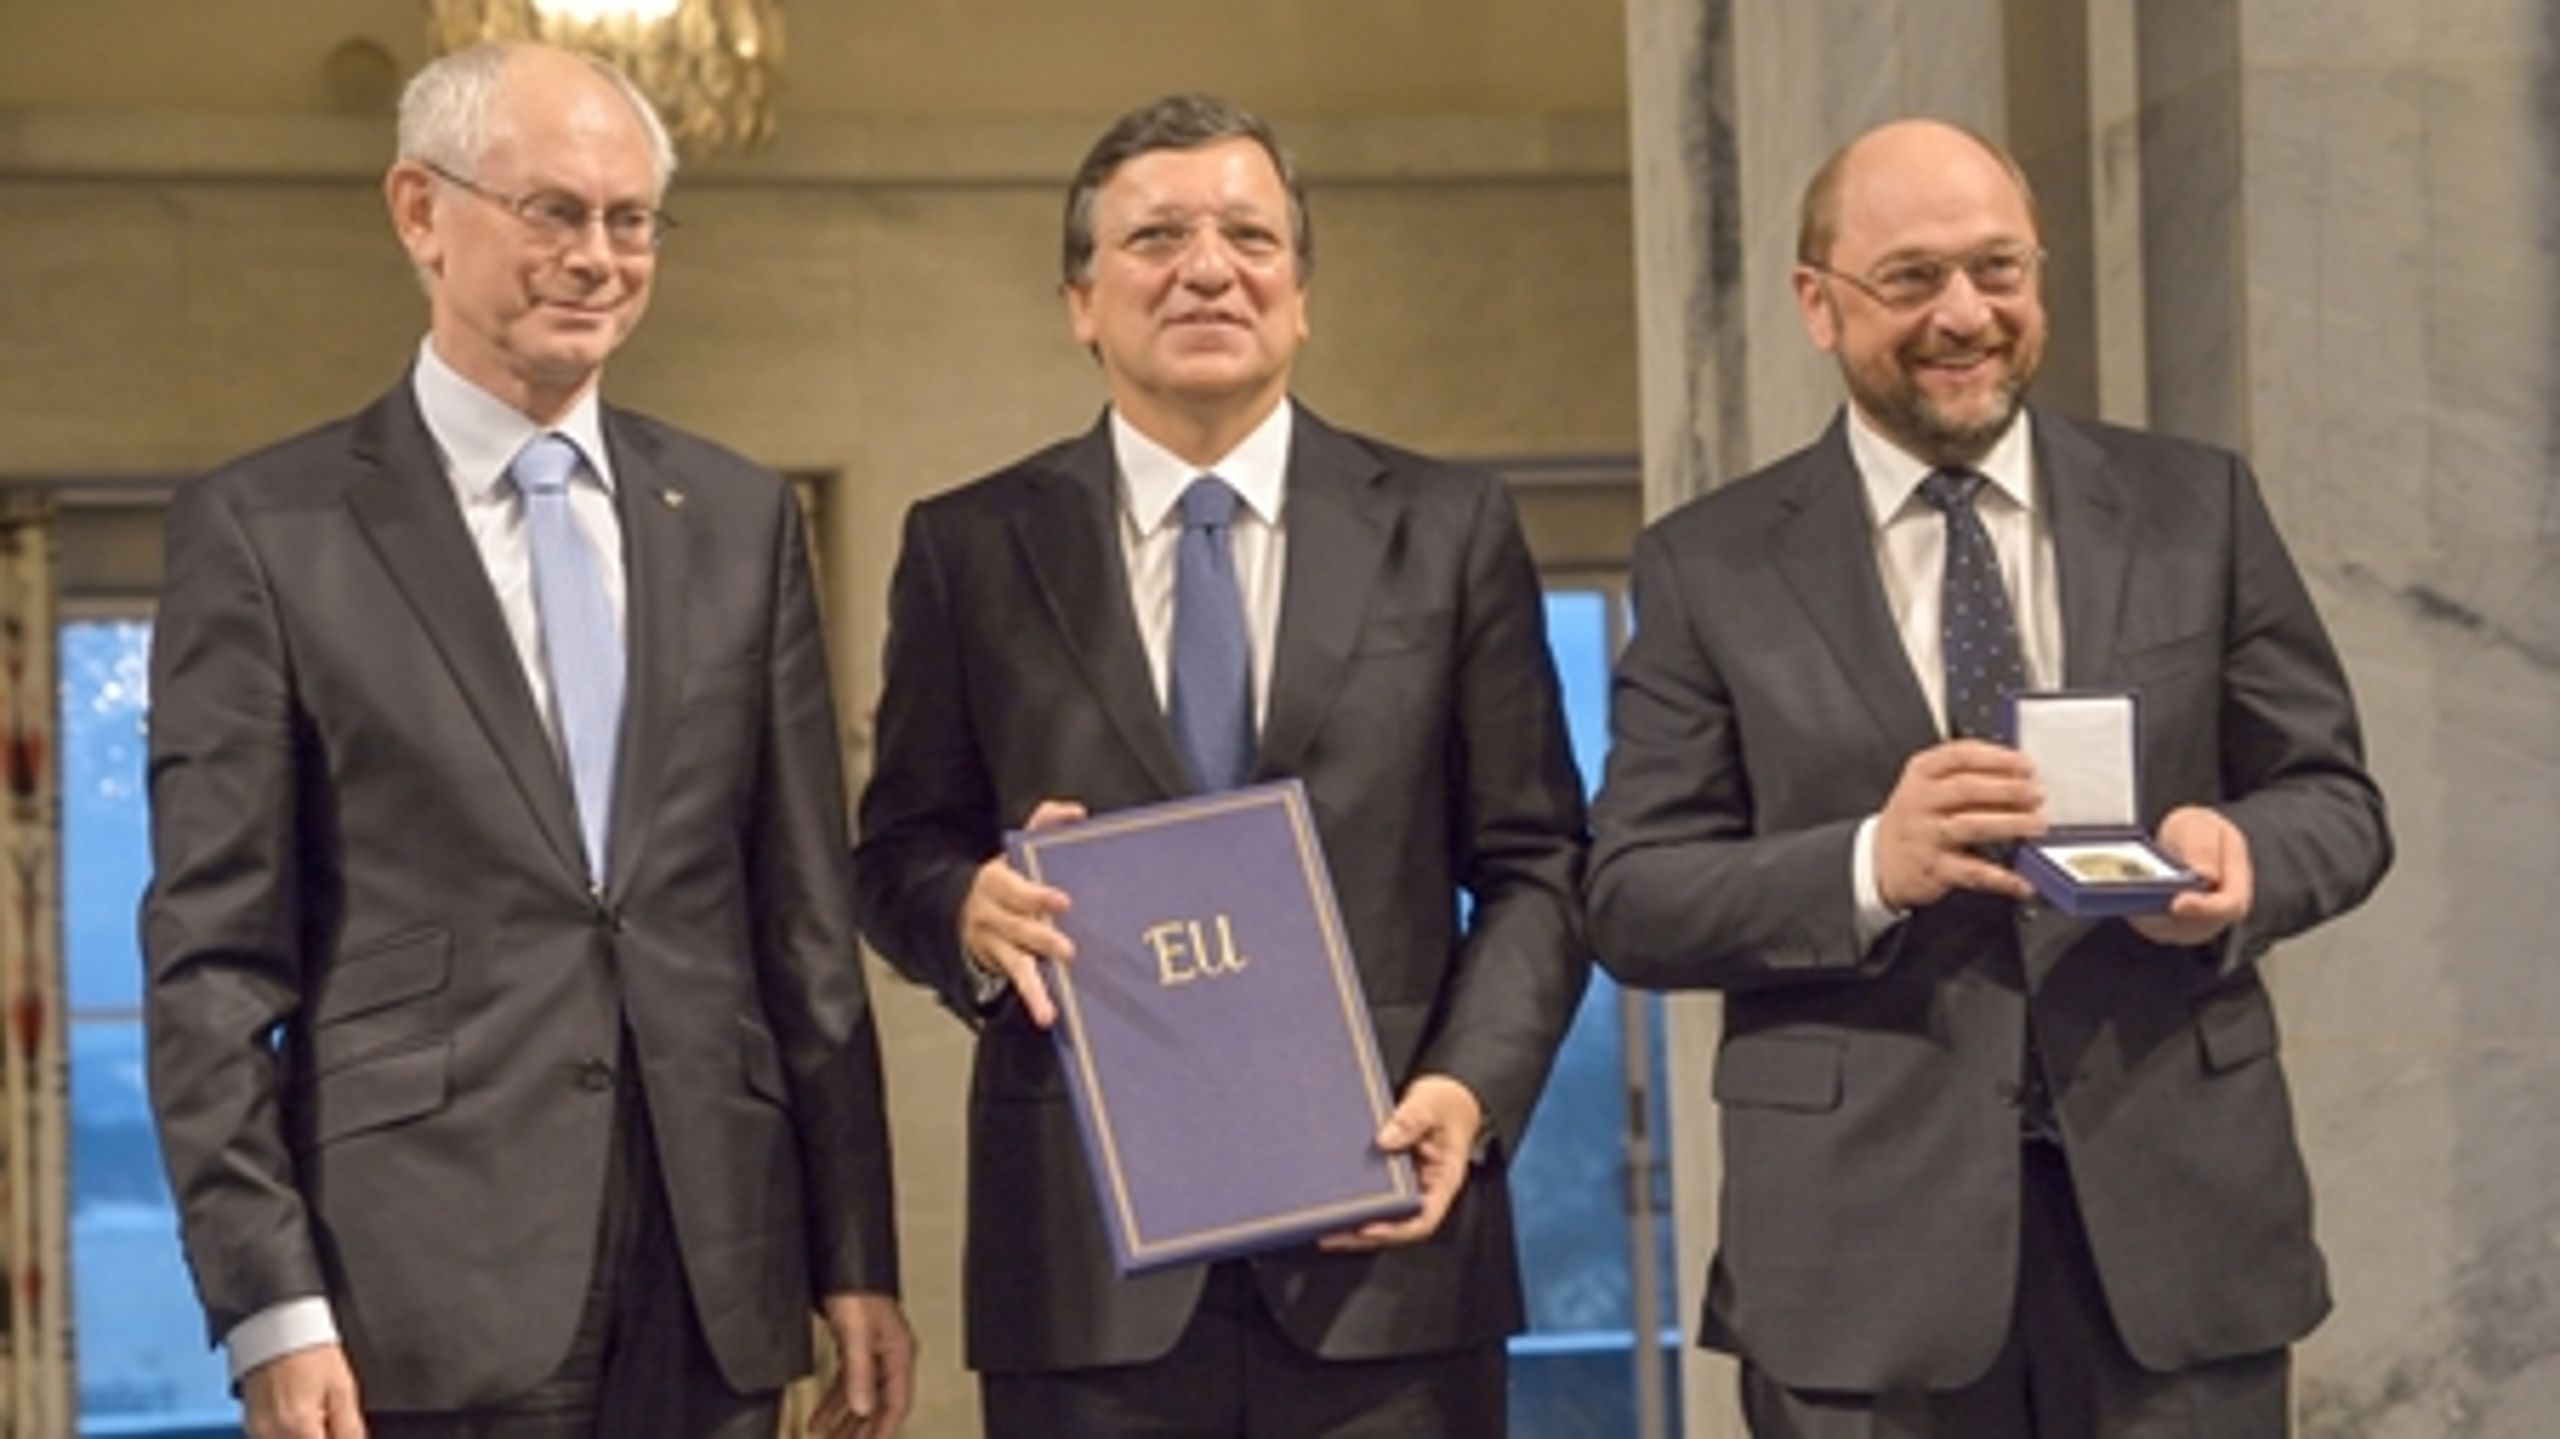 EU's ledere fra de tre institutioner var alle til stede i Oslo mandag. Her Herman Van Rompuy, Josè Manuel Barroso og Martin Schulz.